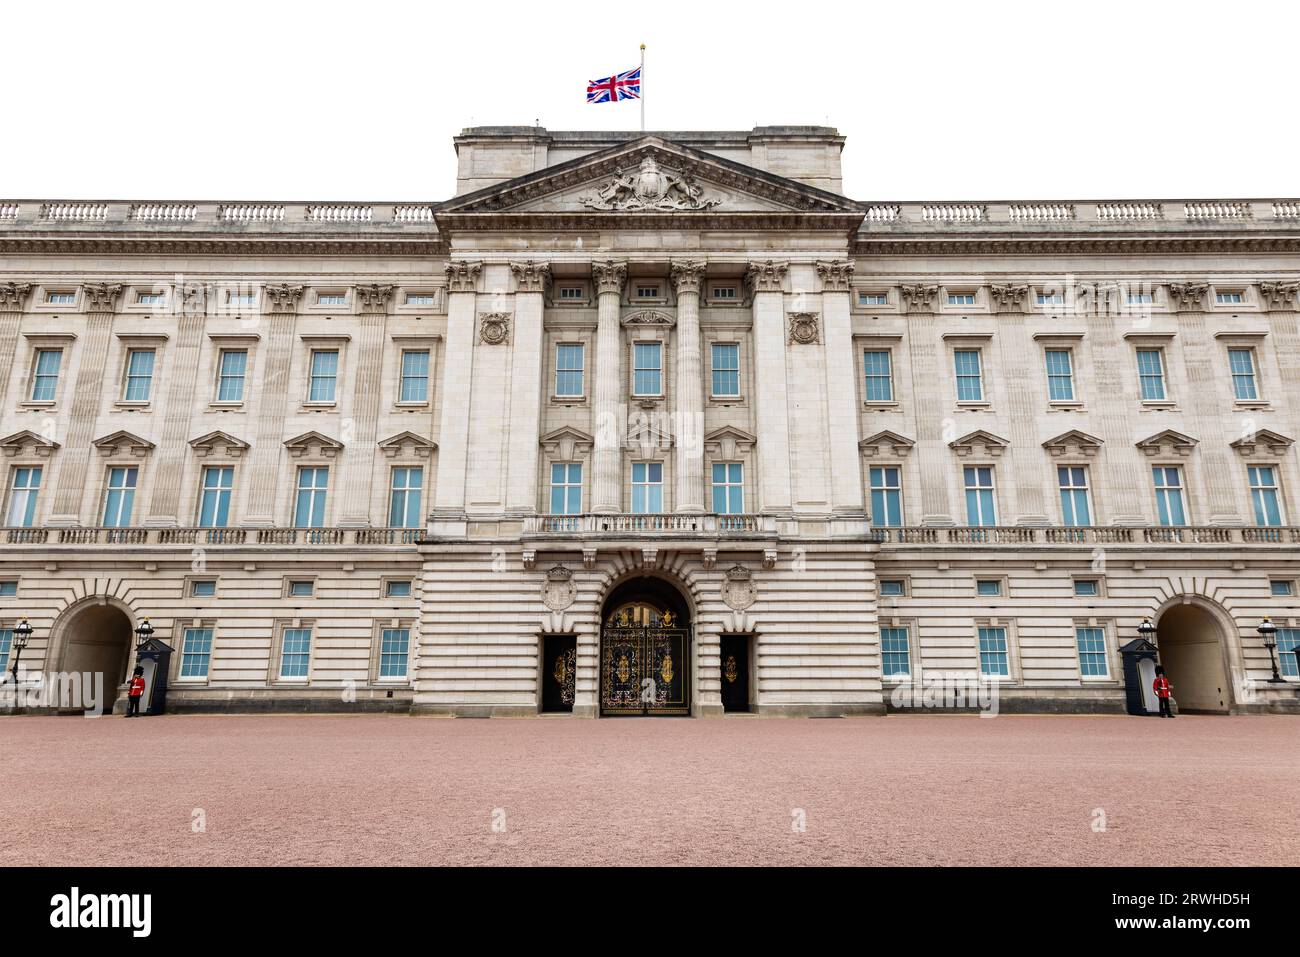 Fachada del palacio de Buckingham, residencia real en Londres y la sede administrativa del monarca del Reino Unido, en Londres, aislado o Foto de stock